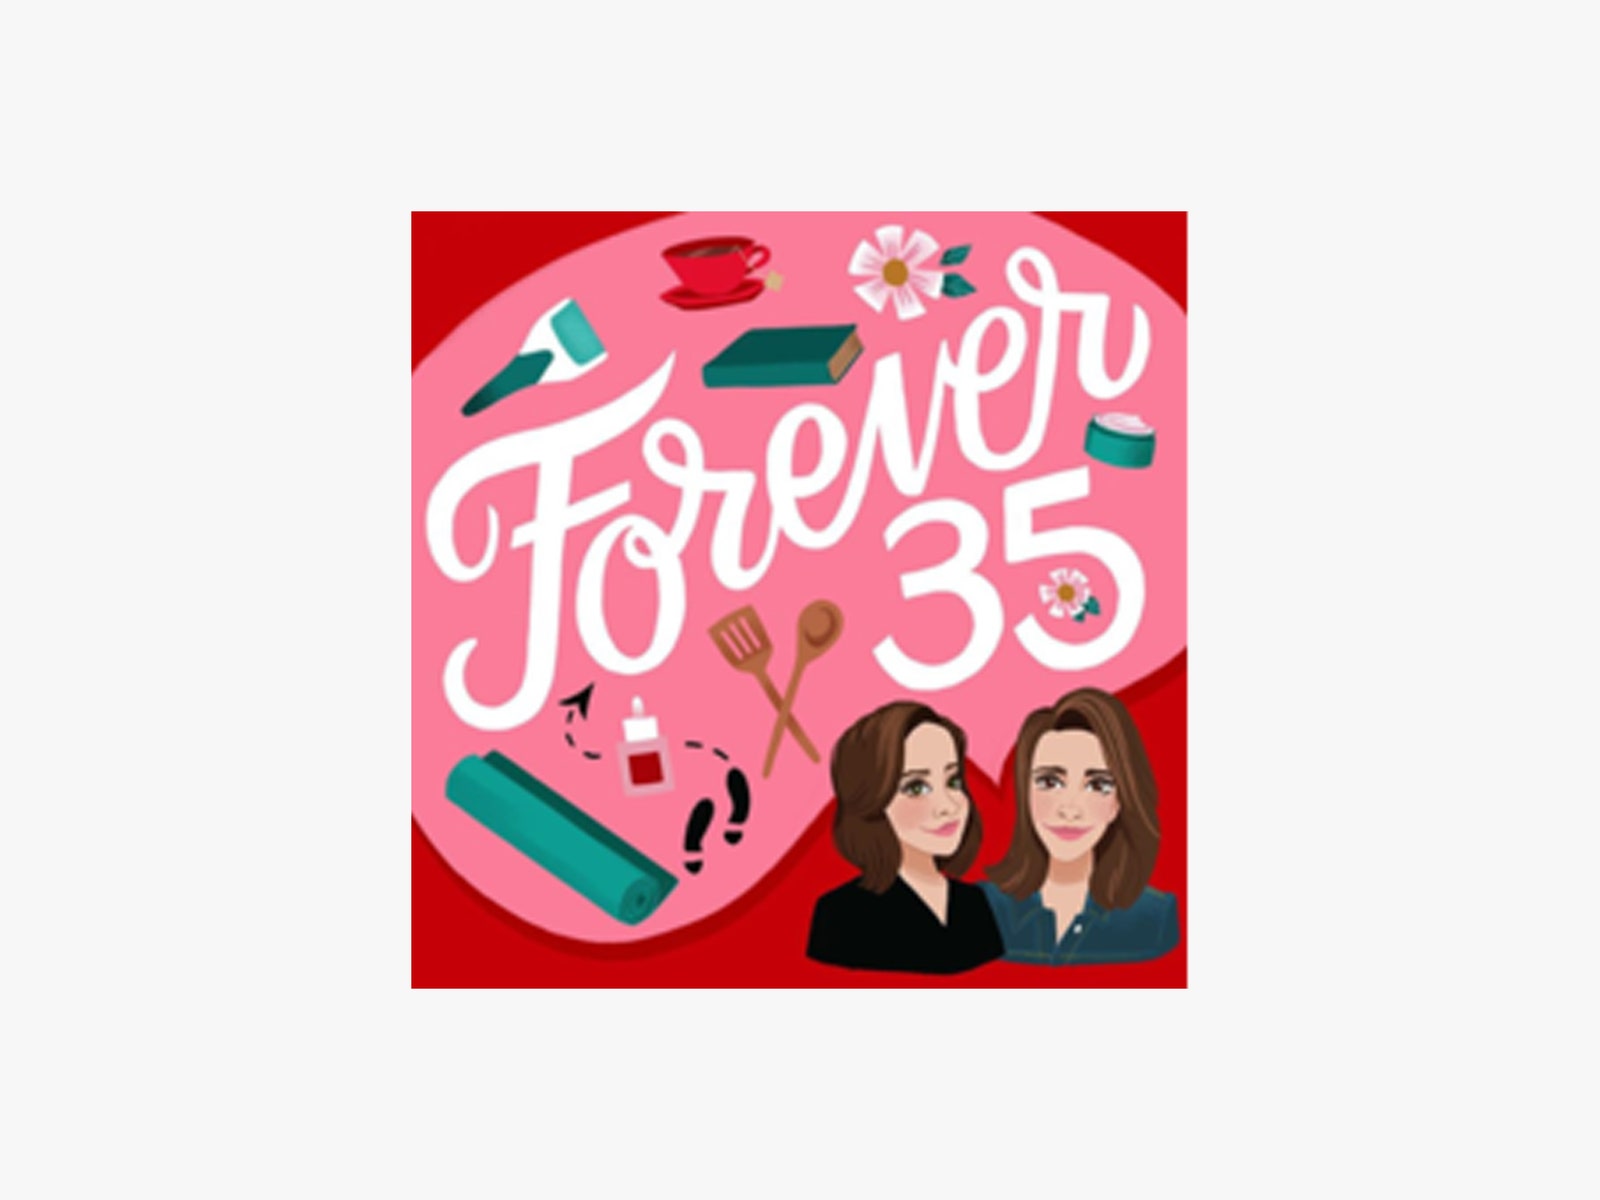 Forever35 podcast art